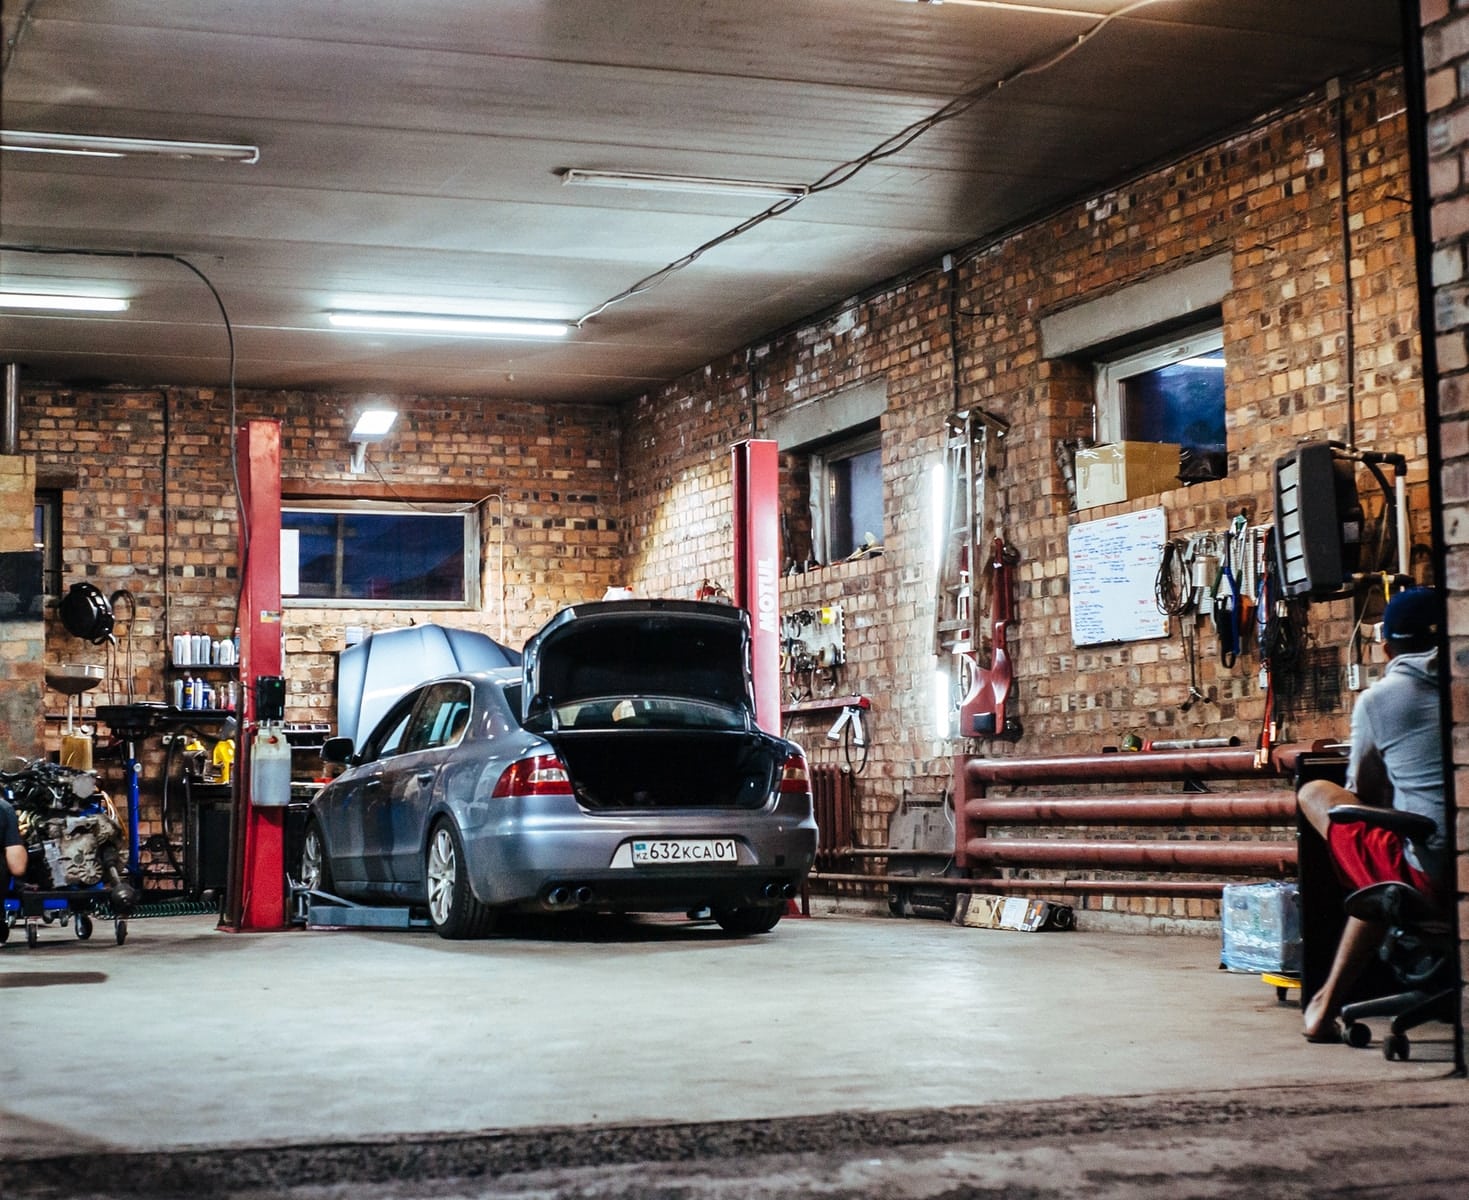 Ouvrir un garage automobile - Cabinet d'expert comptable en ligne Keobiz